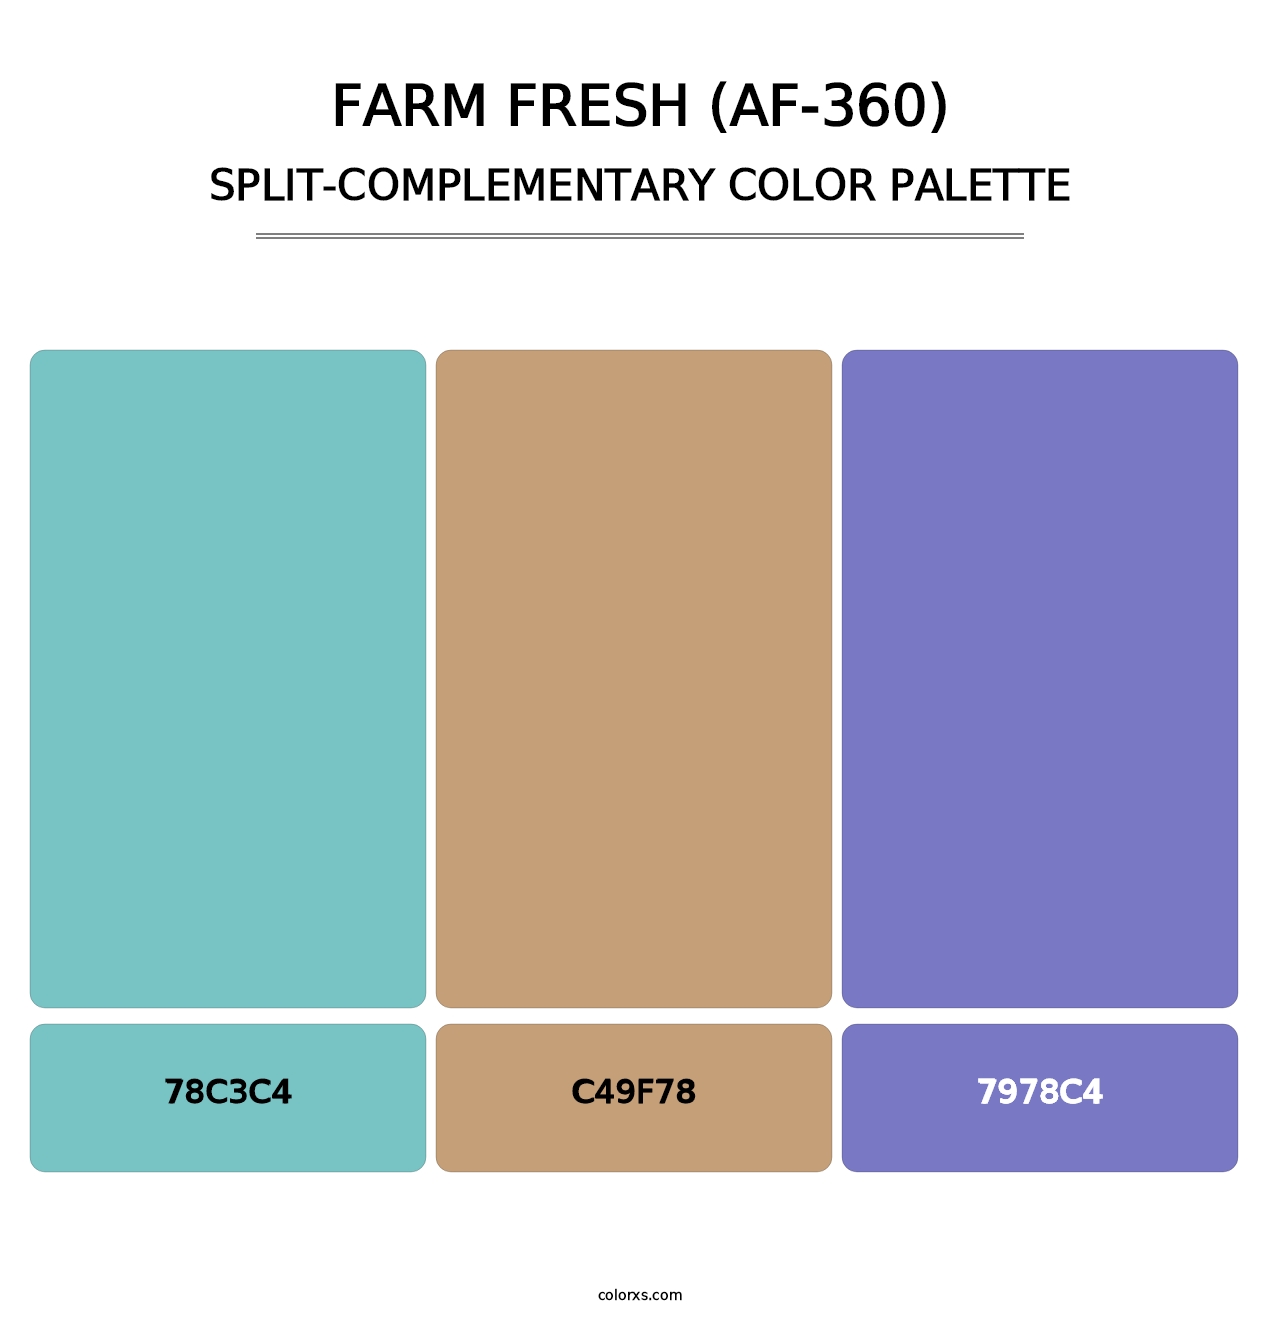 Farm Fresh (AF-360) - Split-Complementary Color Palette